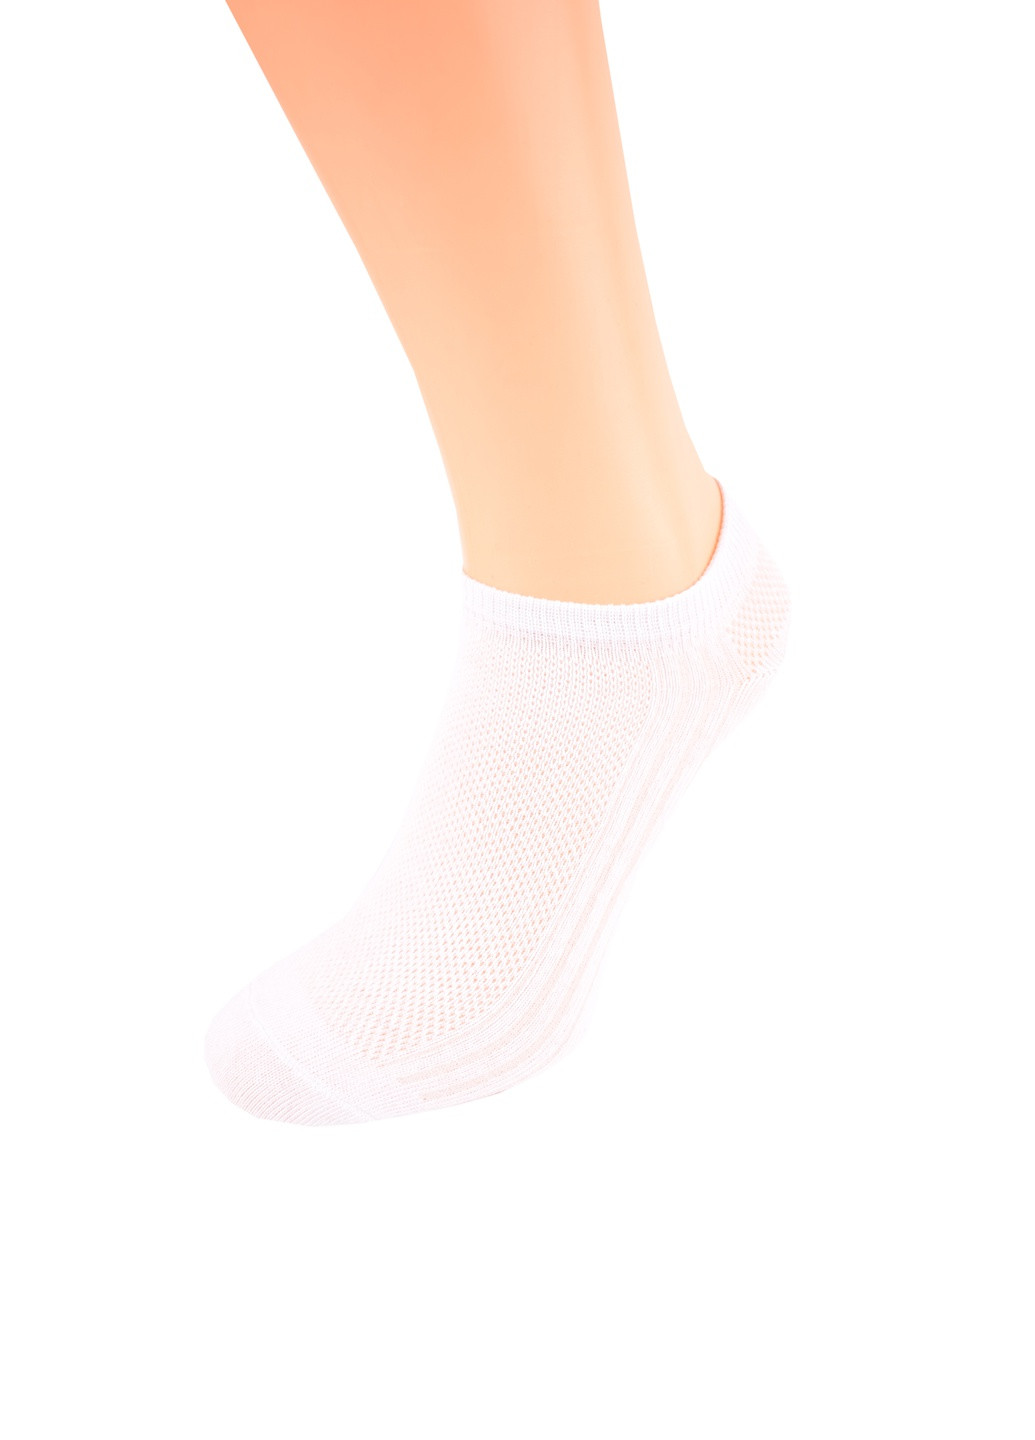 Набор мужских носков с сеткой (3 пары) Дукат однотонные комбинированные повседневные